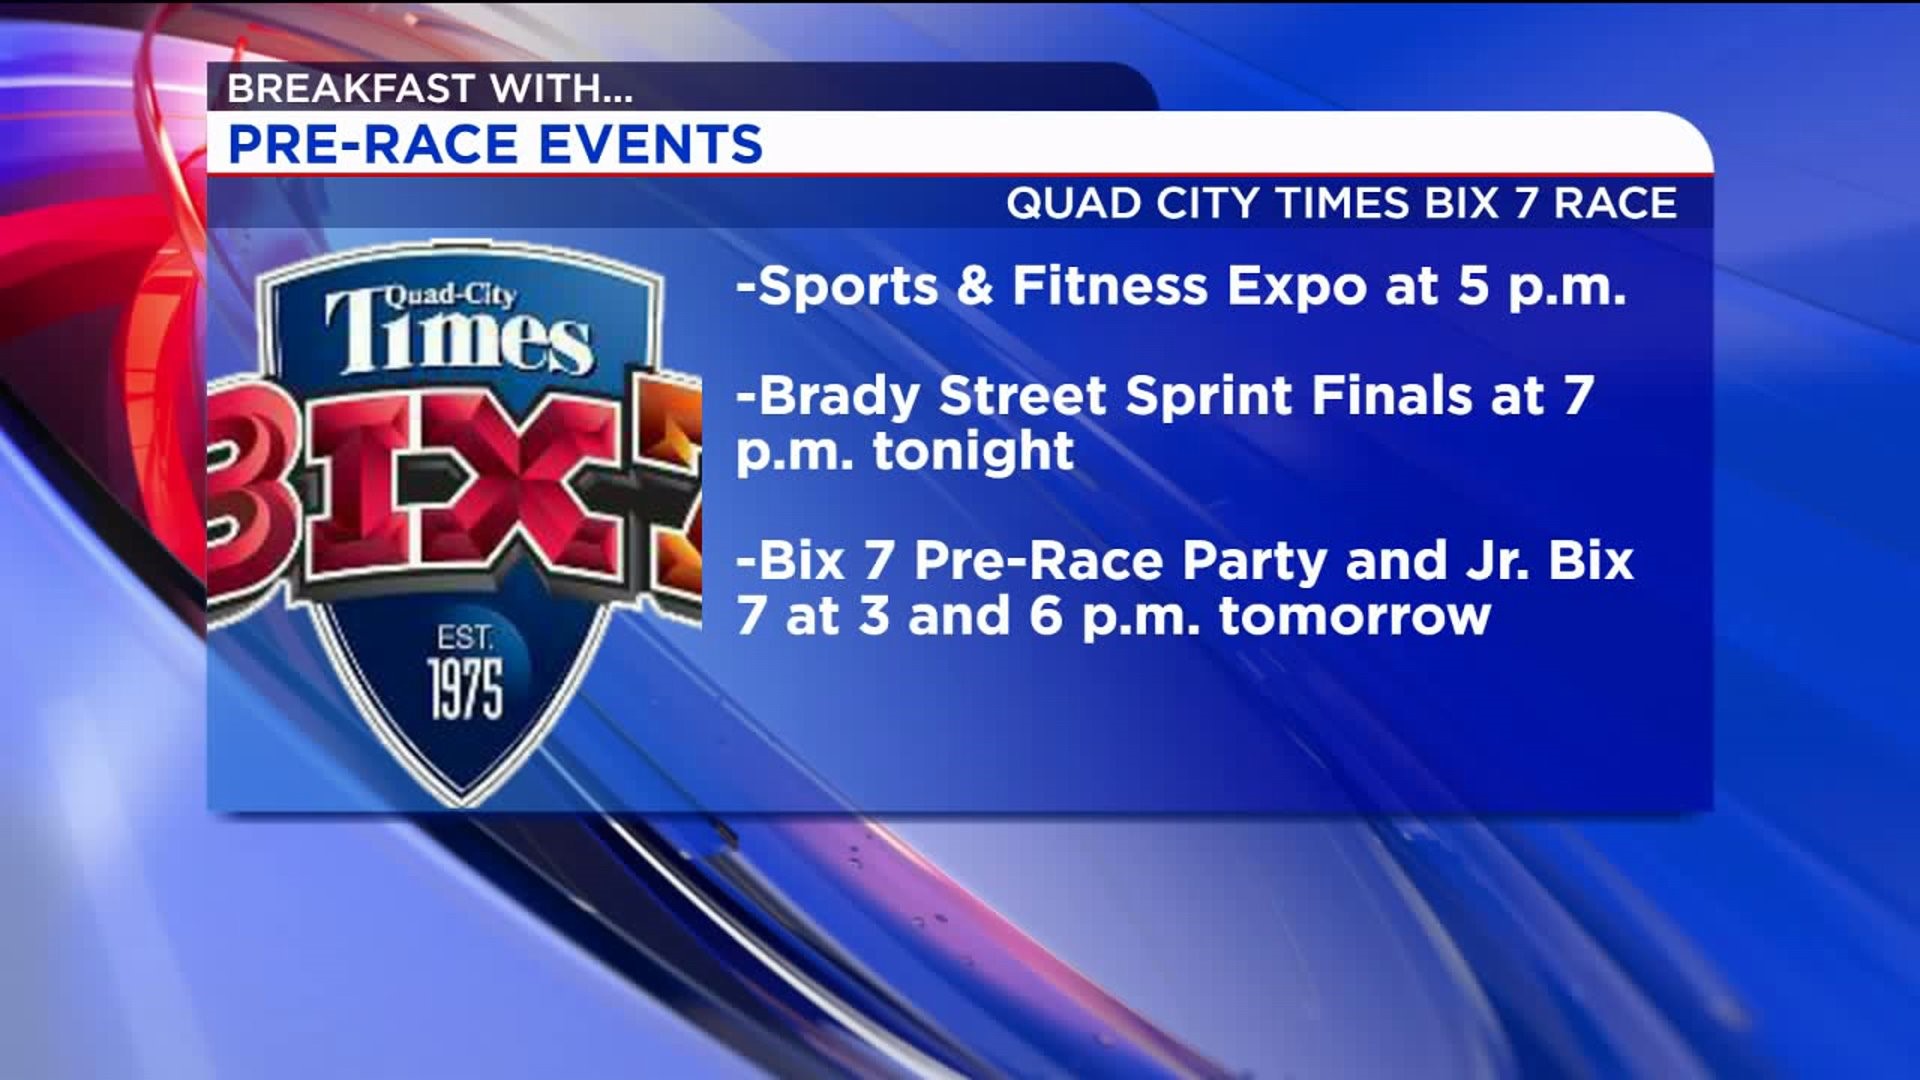 Pre-Race Schedule for the Quad City Times Bix 7